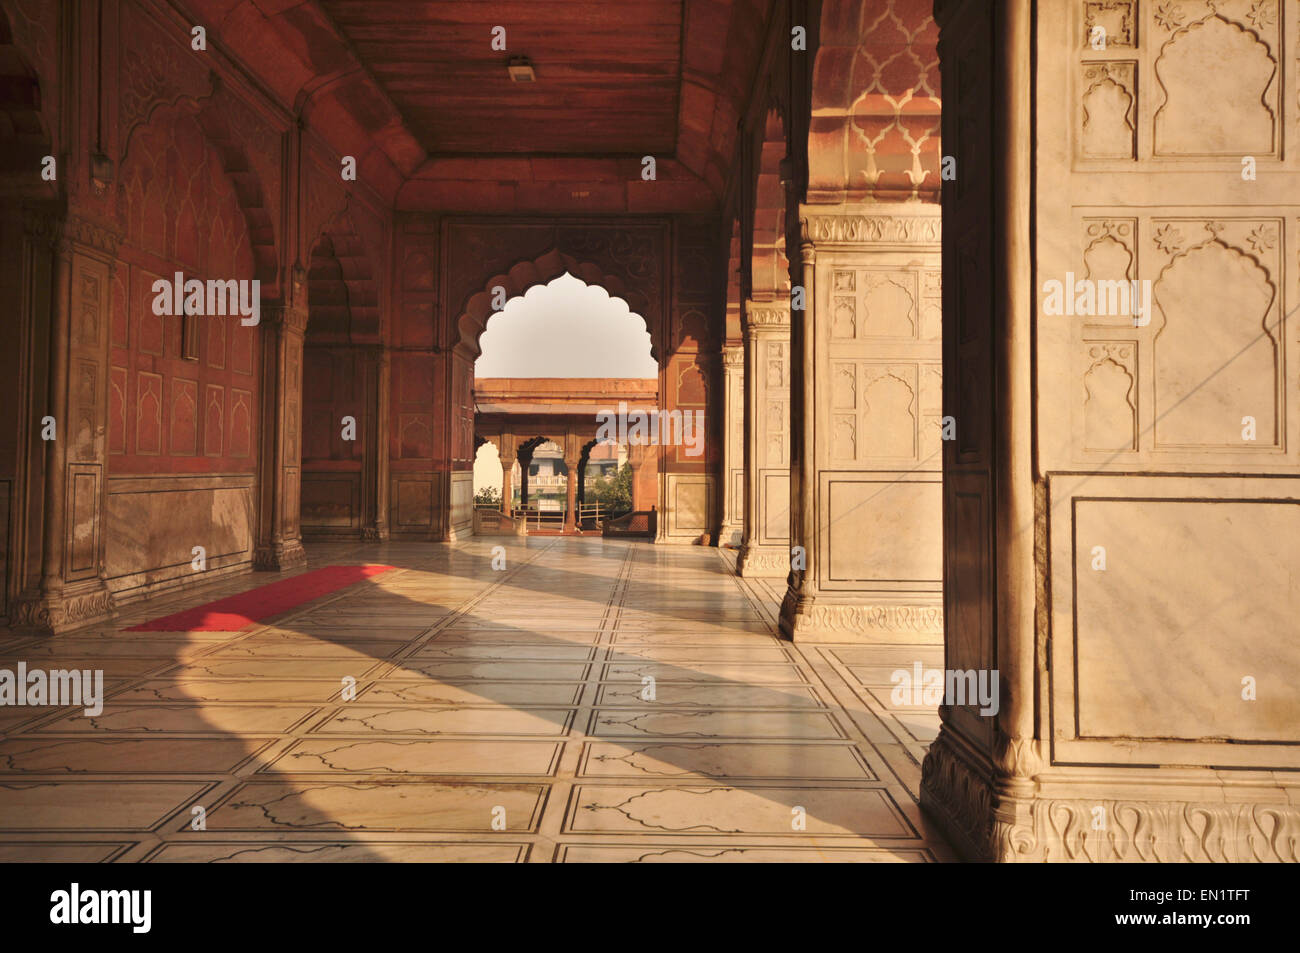 INDIA, Haryana, Delhi, Islamic Jama Masjid (1644), Friday Mosque, interior view Stock Photo